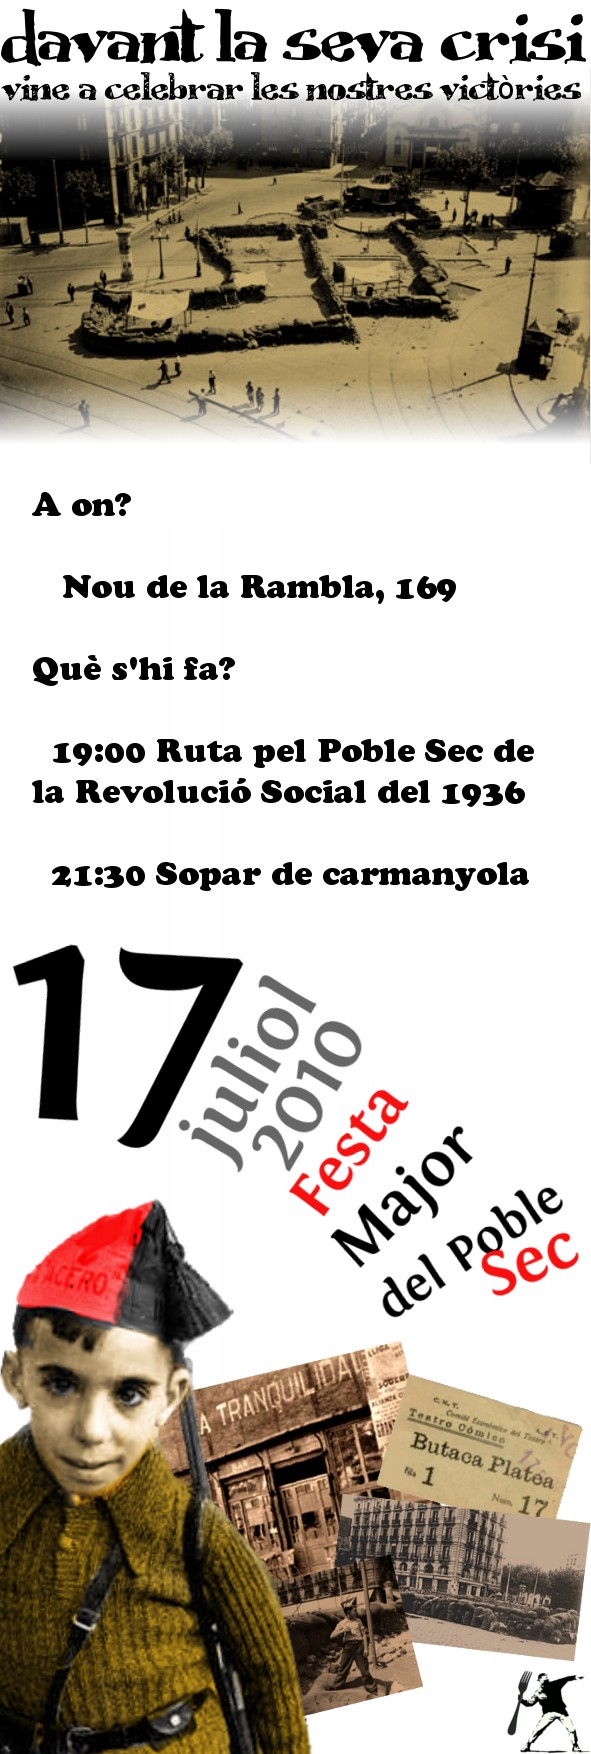 Ruta pel Poble Sec de la Revolució Social del 1936